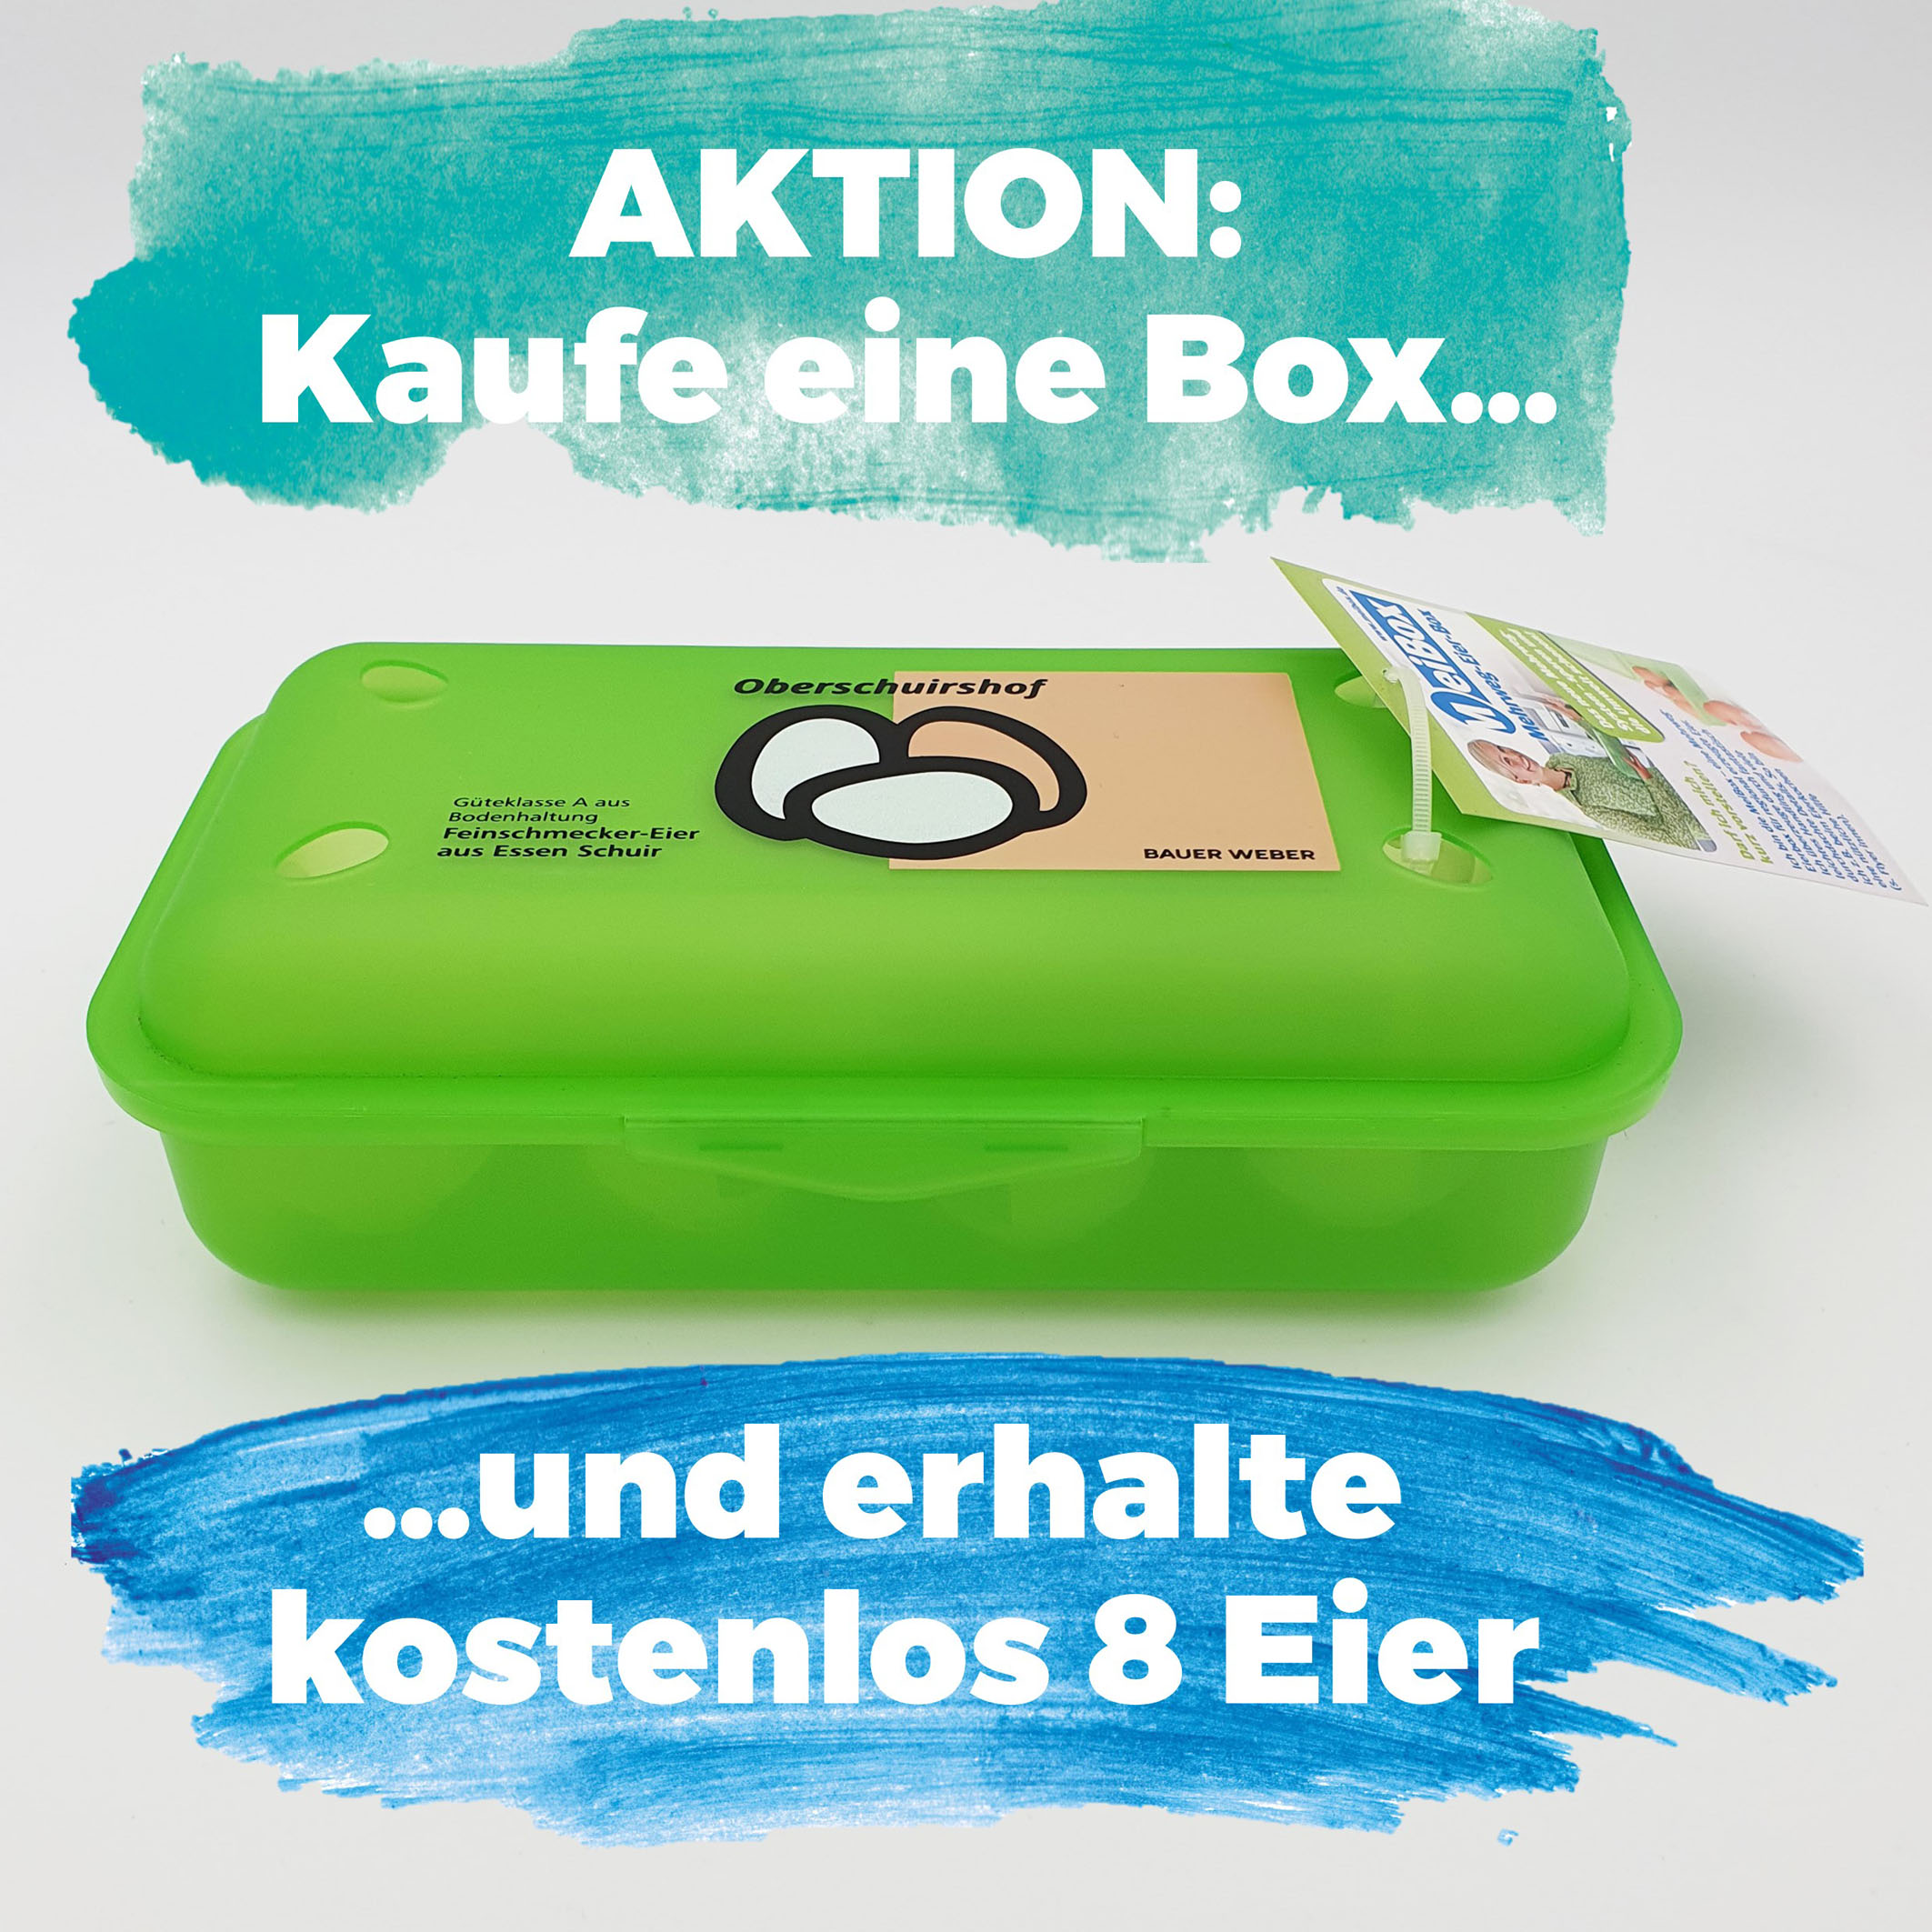 Eierbox_Aktion